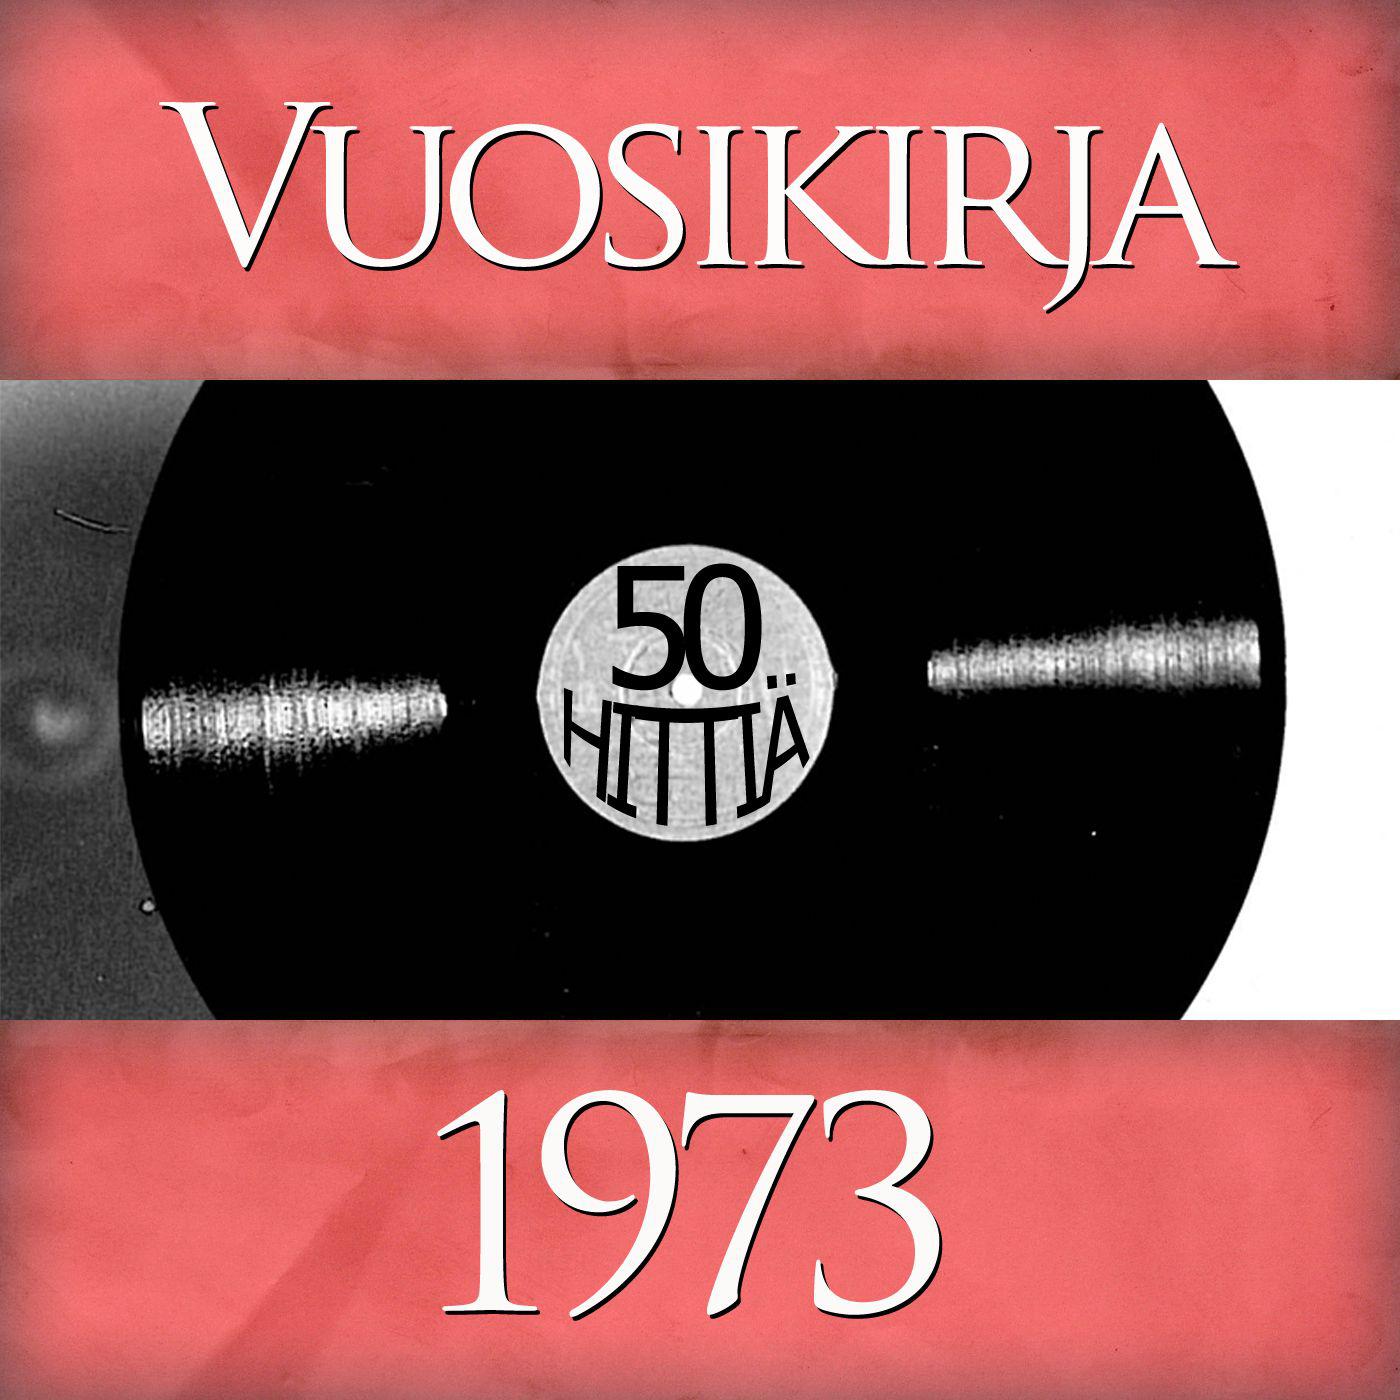 Vuosikirja 1973 - 50 hittiä